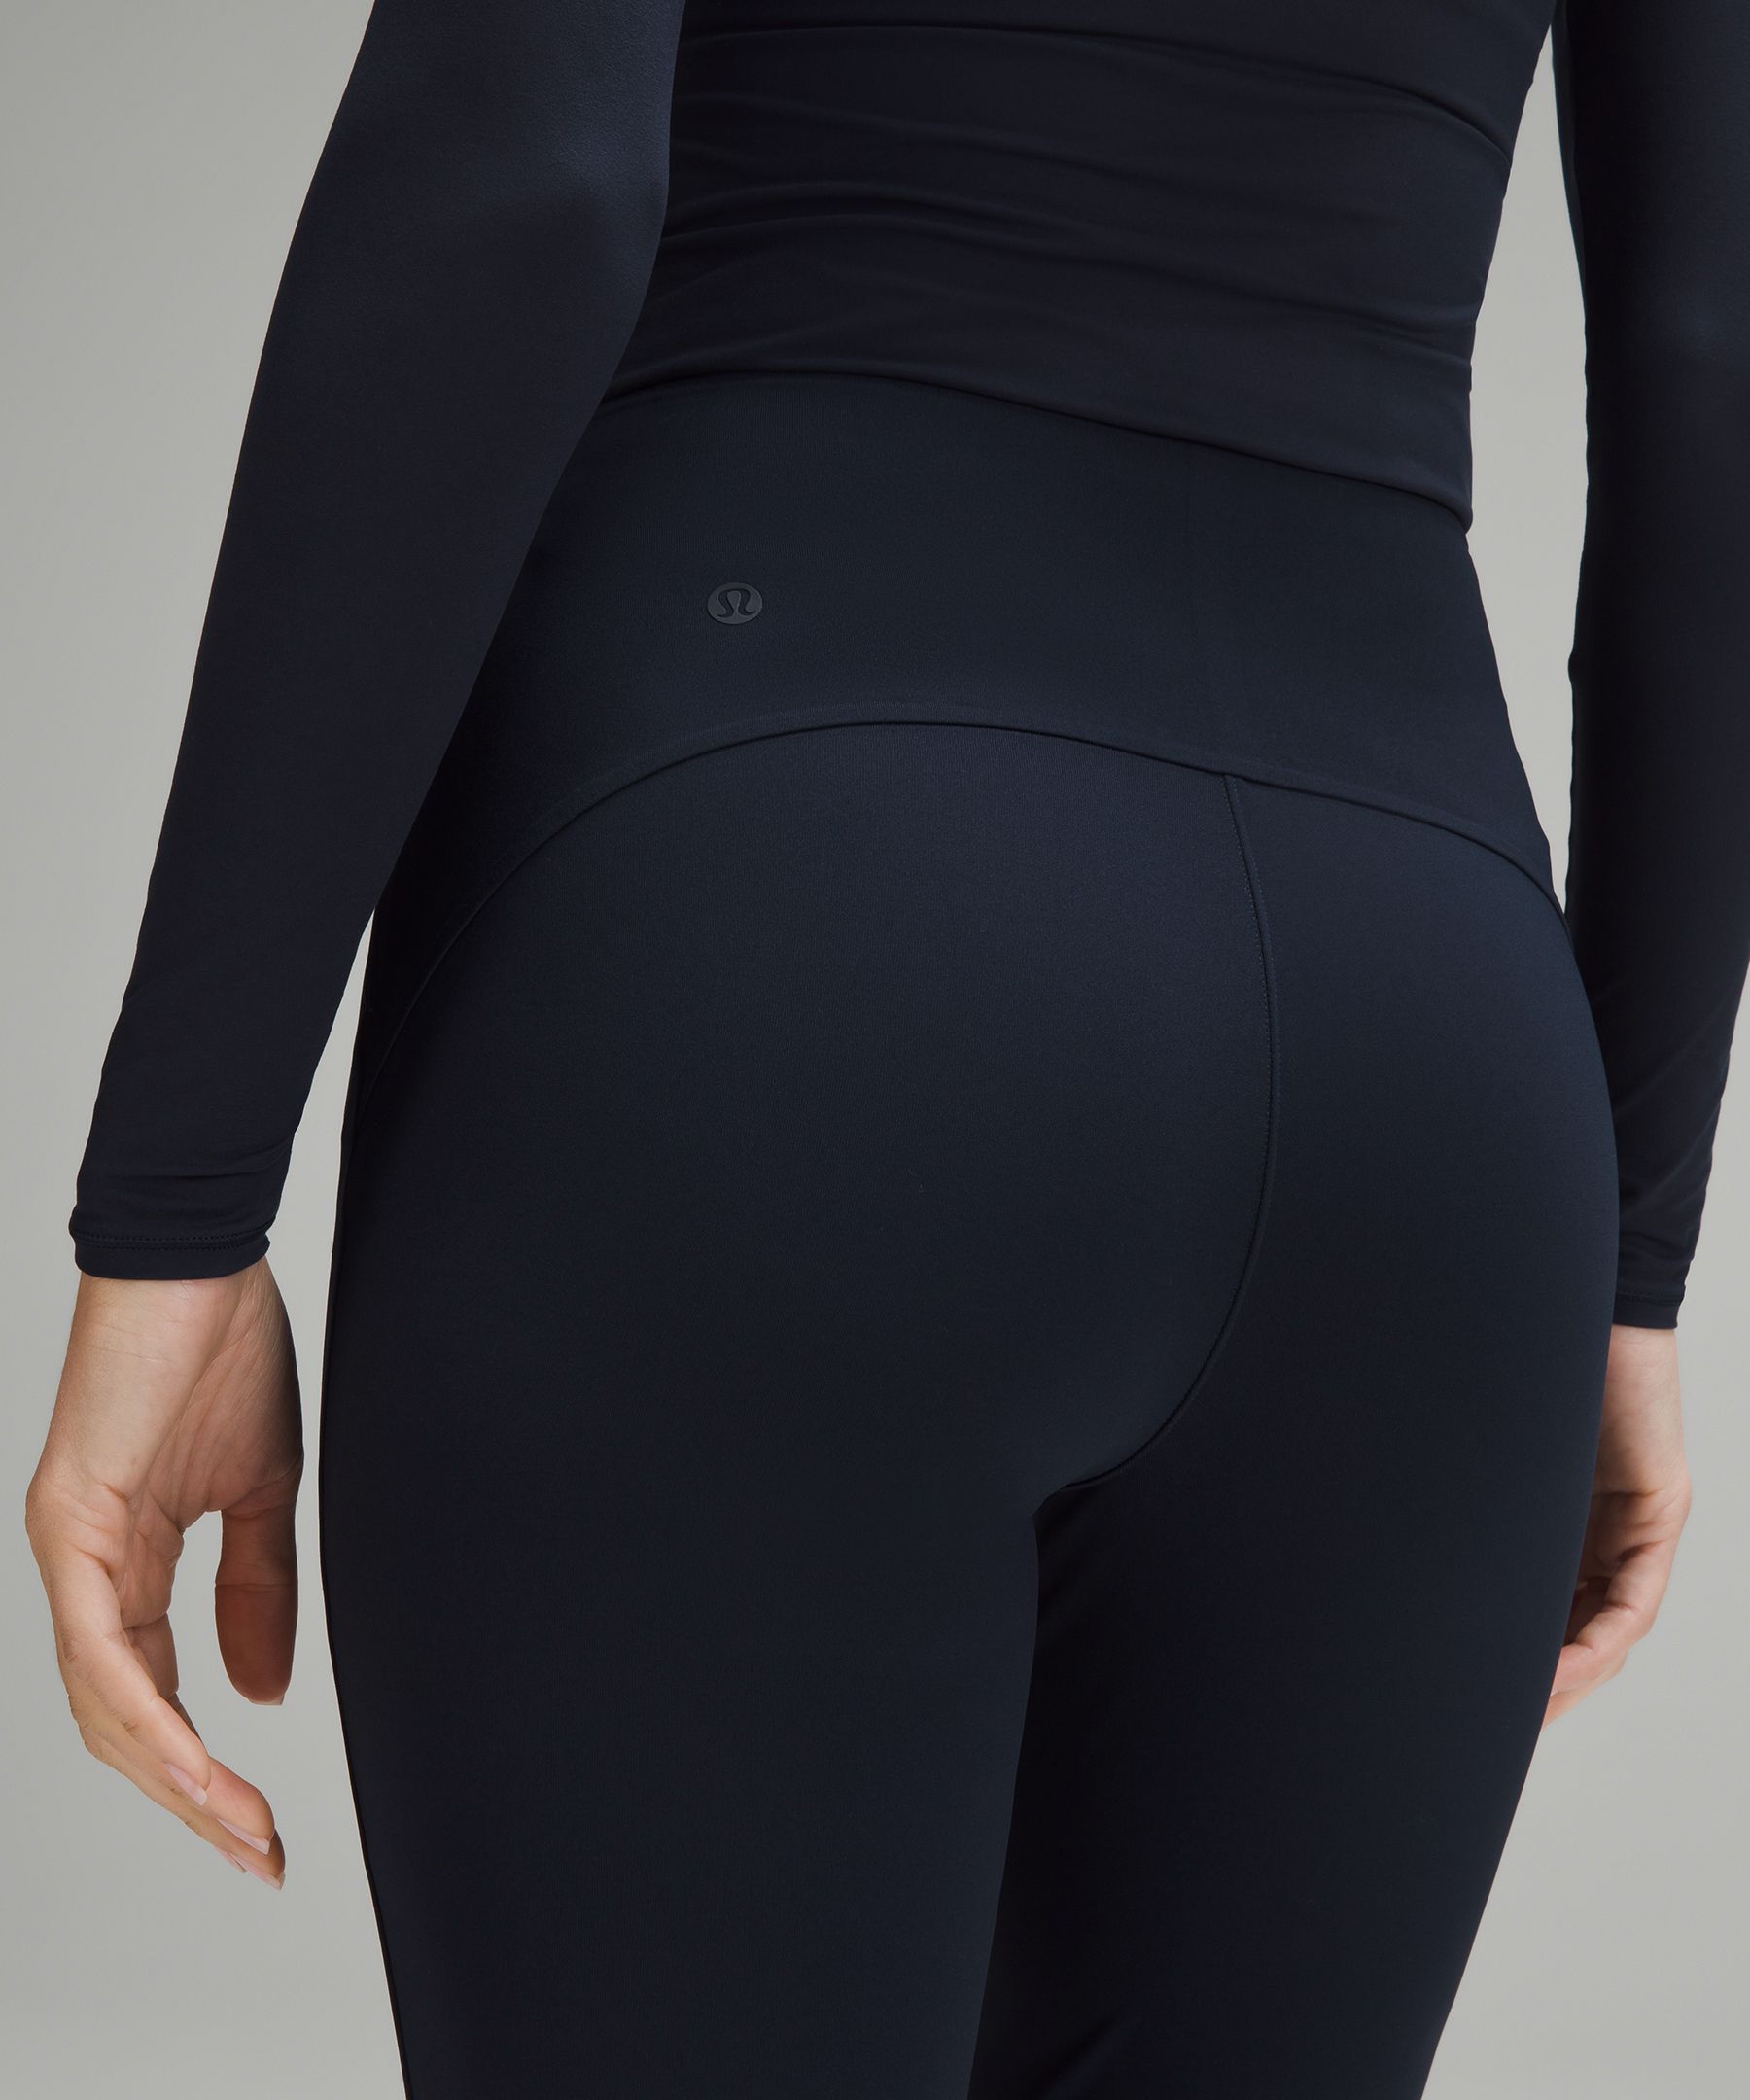 Lululemon Pull-On Zip-Front High-Rise Pant *Full Length - Black